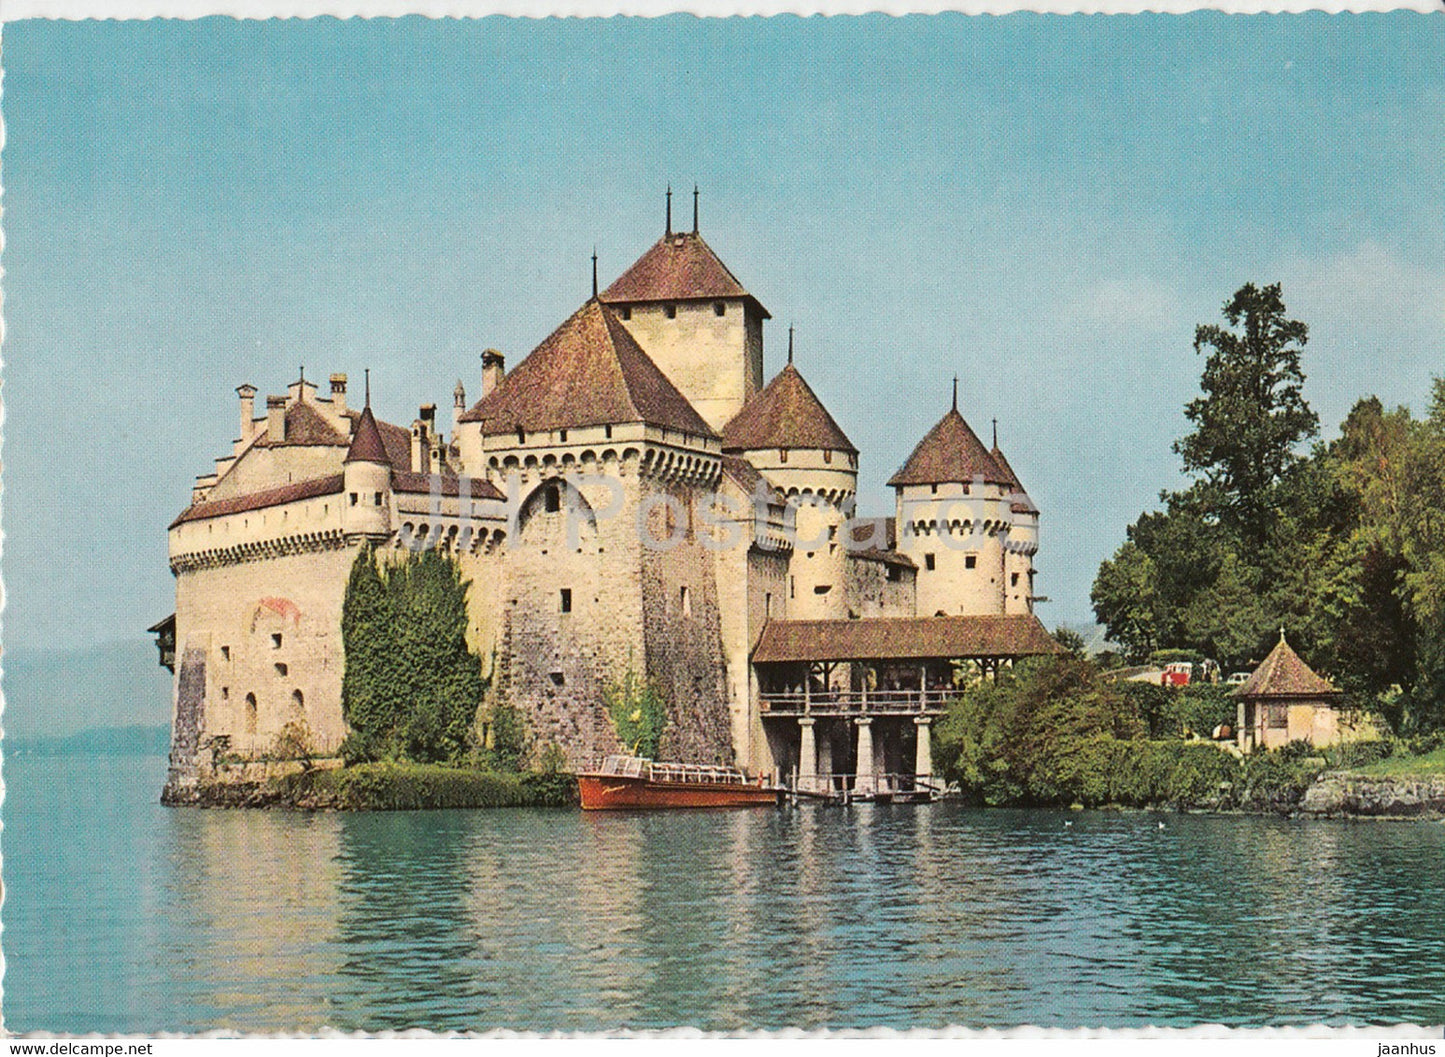 Montreux - Chateau de Chillon - castle - Switzerland - unused - JH Postcards